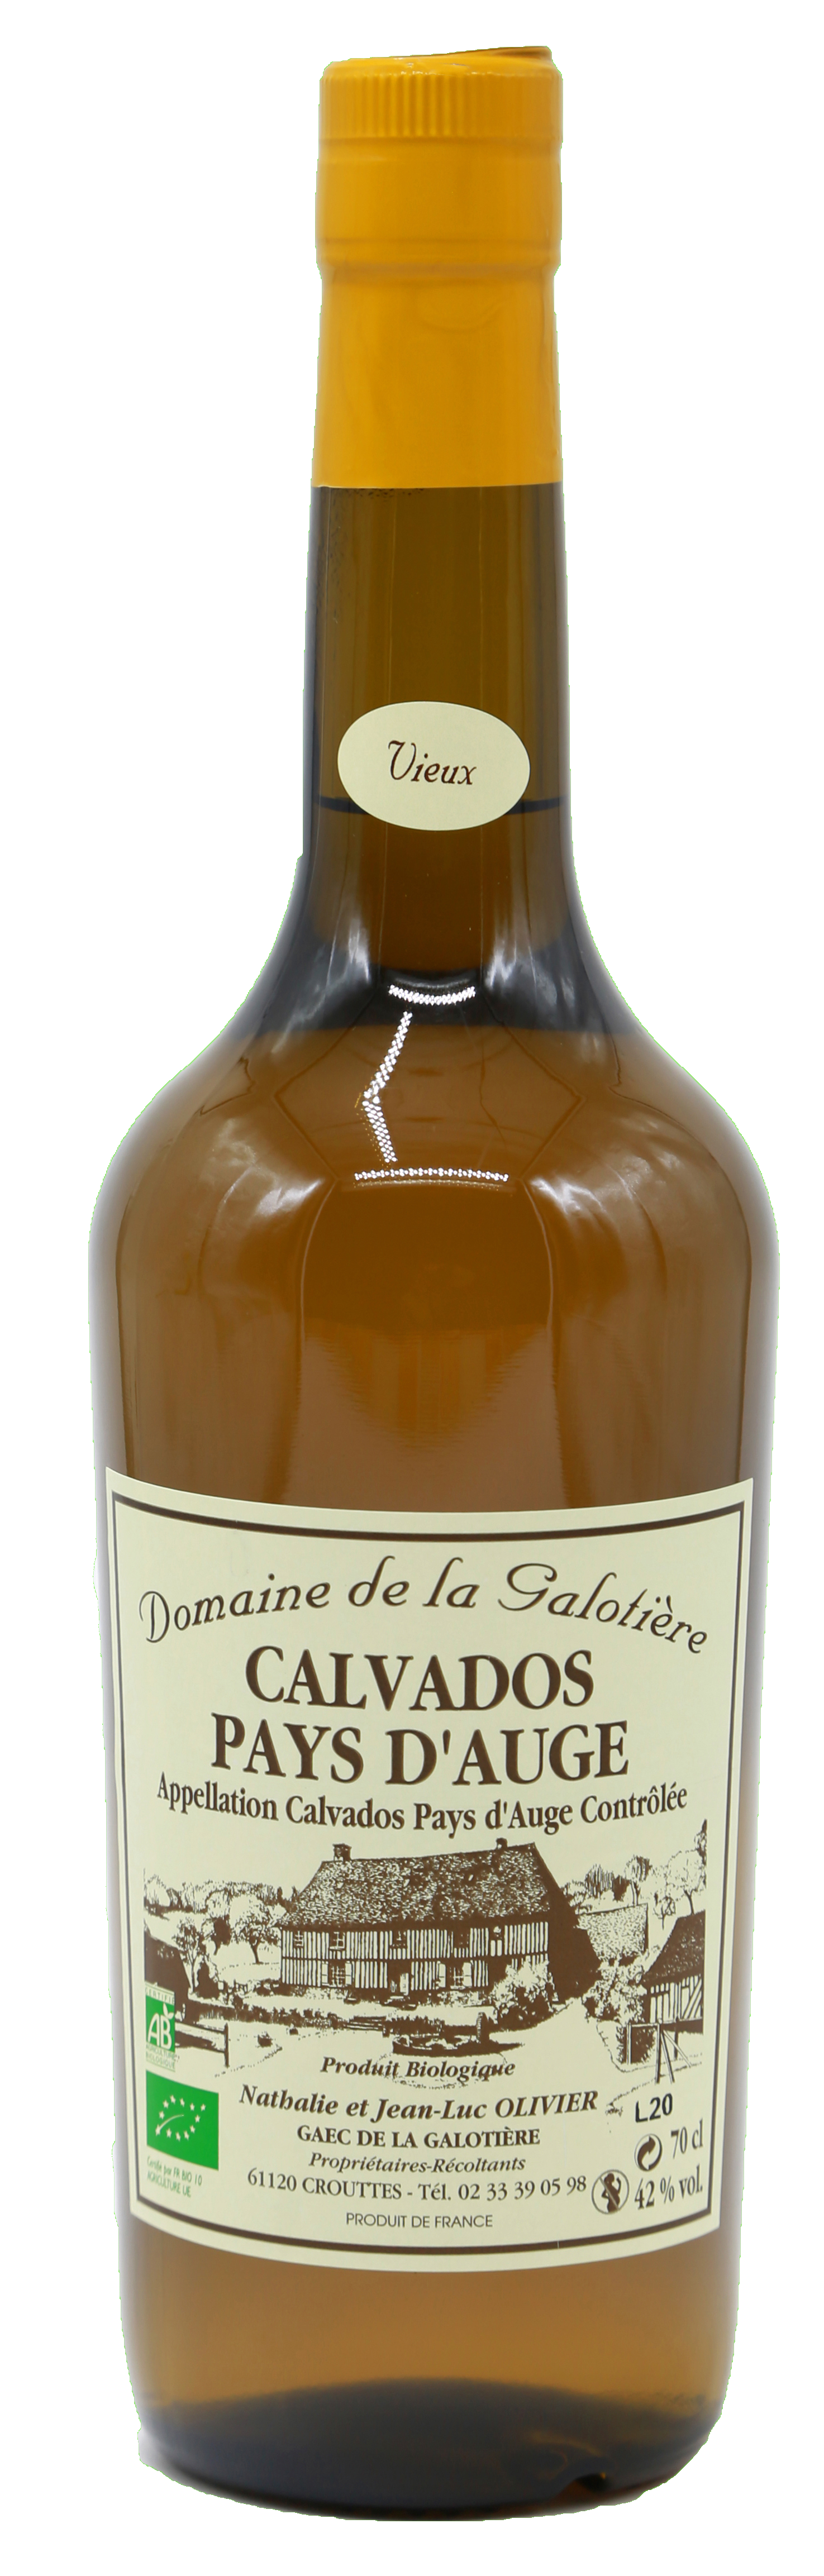 CALVADOS VIEUX (2)